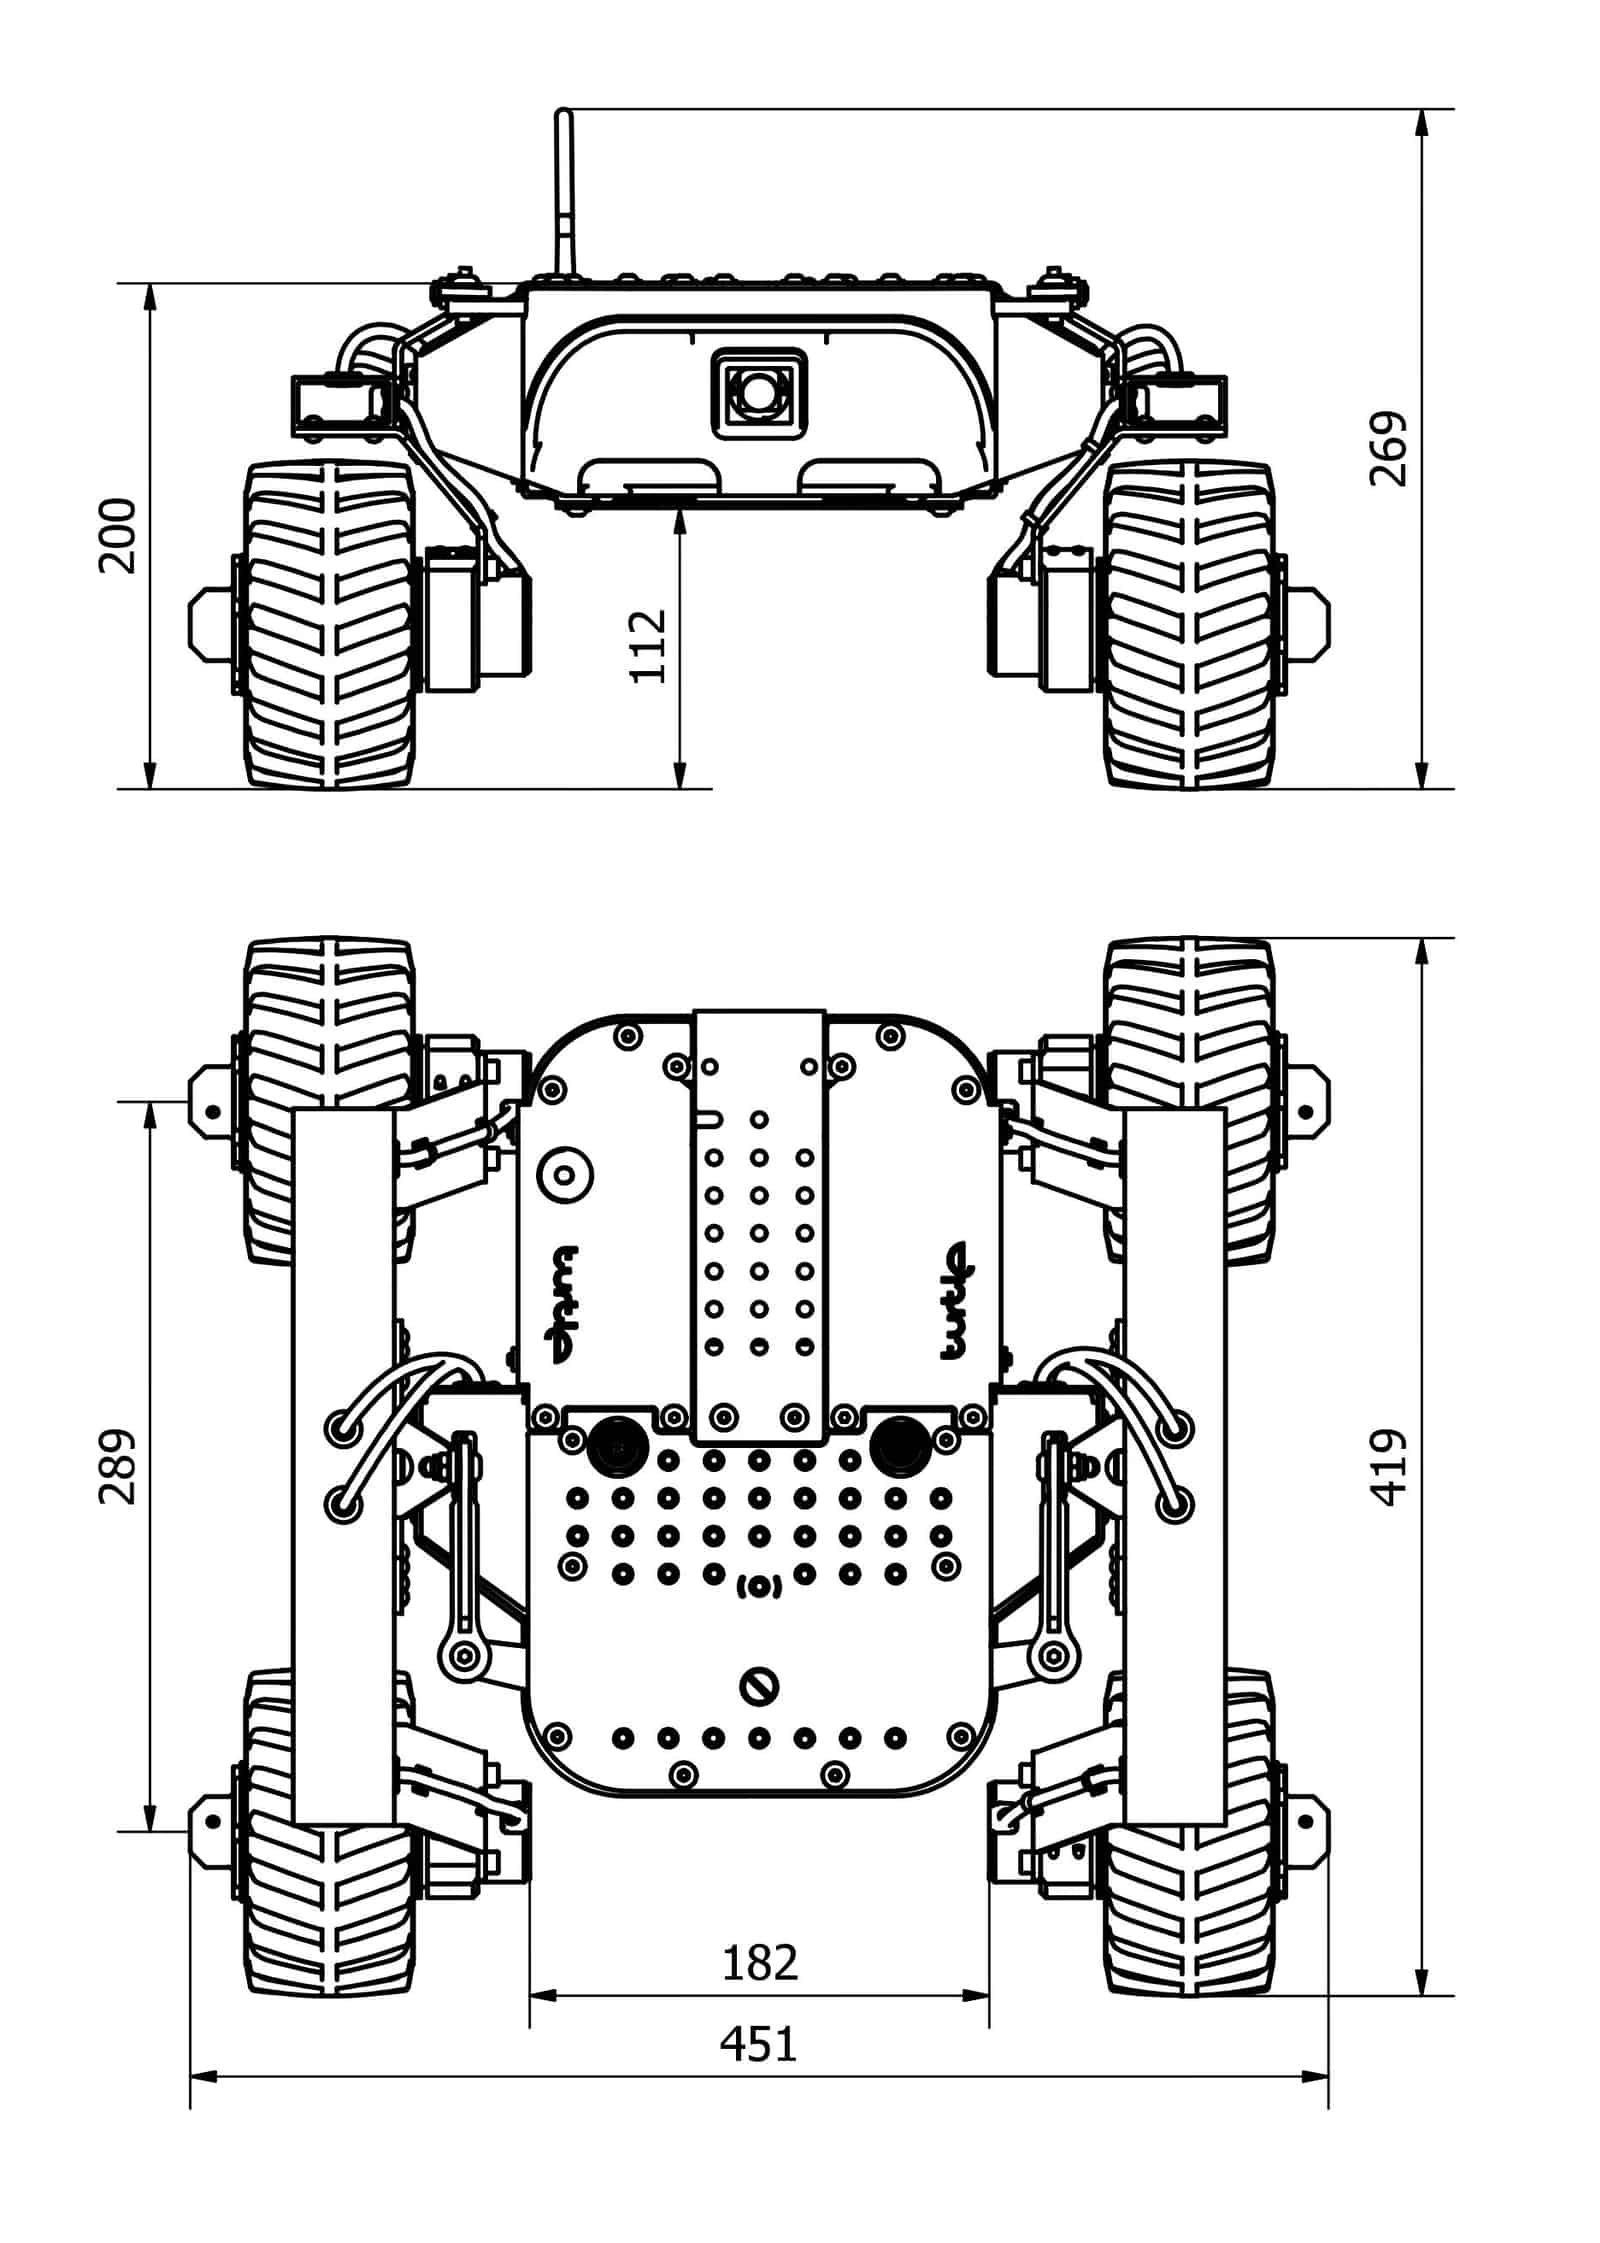 Leo Rover v1.8 (Assembled) - Click to Enlarge